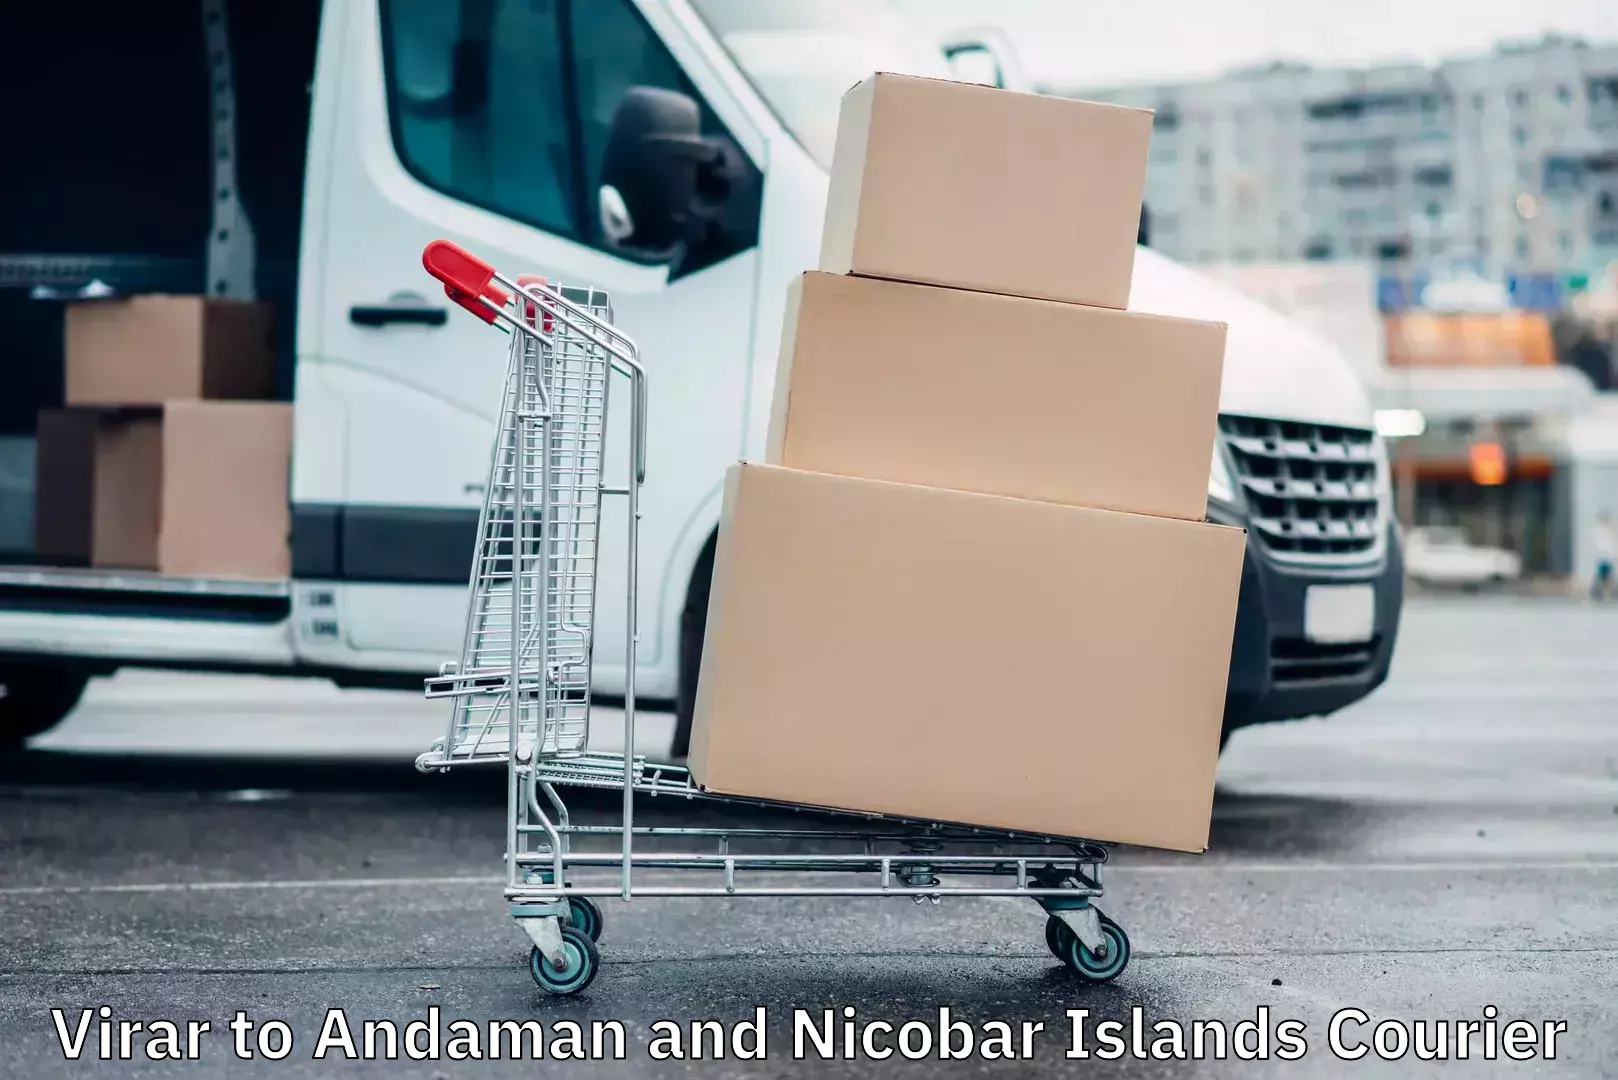 High-performance logistics Virar to Andaman and Nicobar Islands